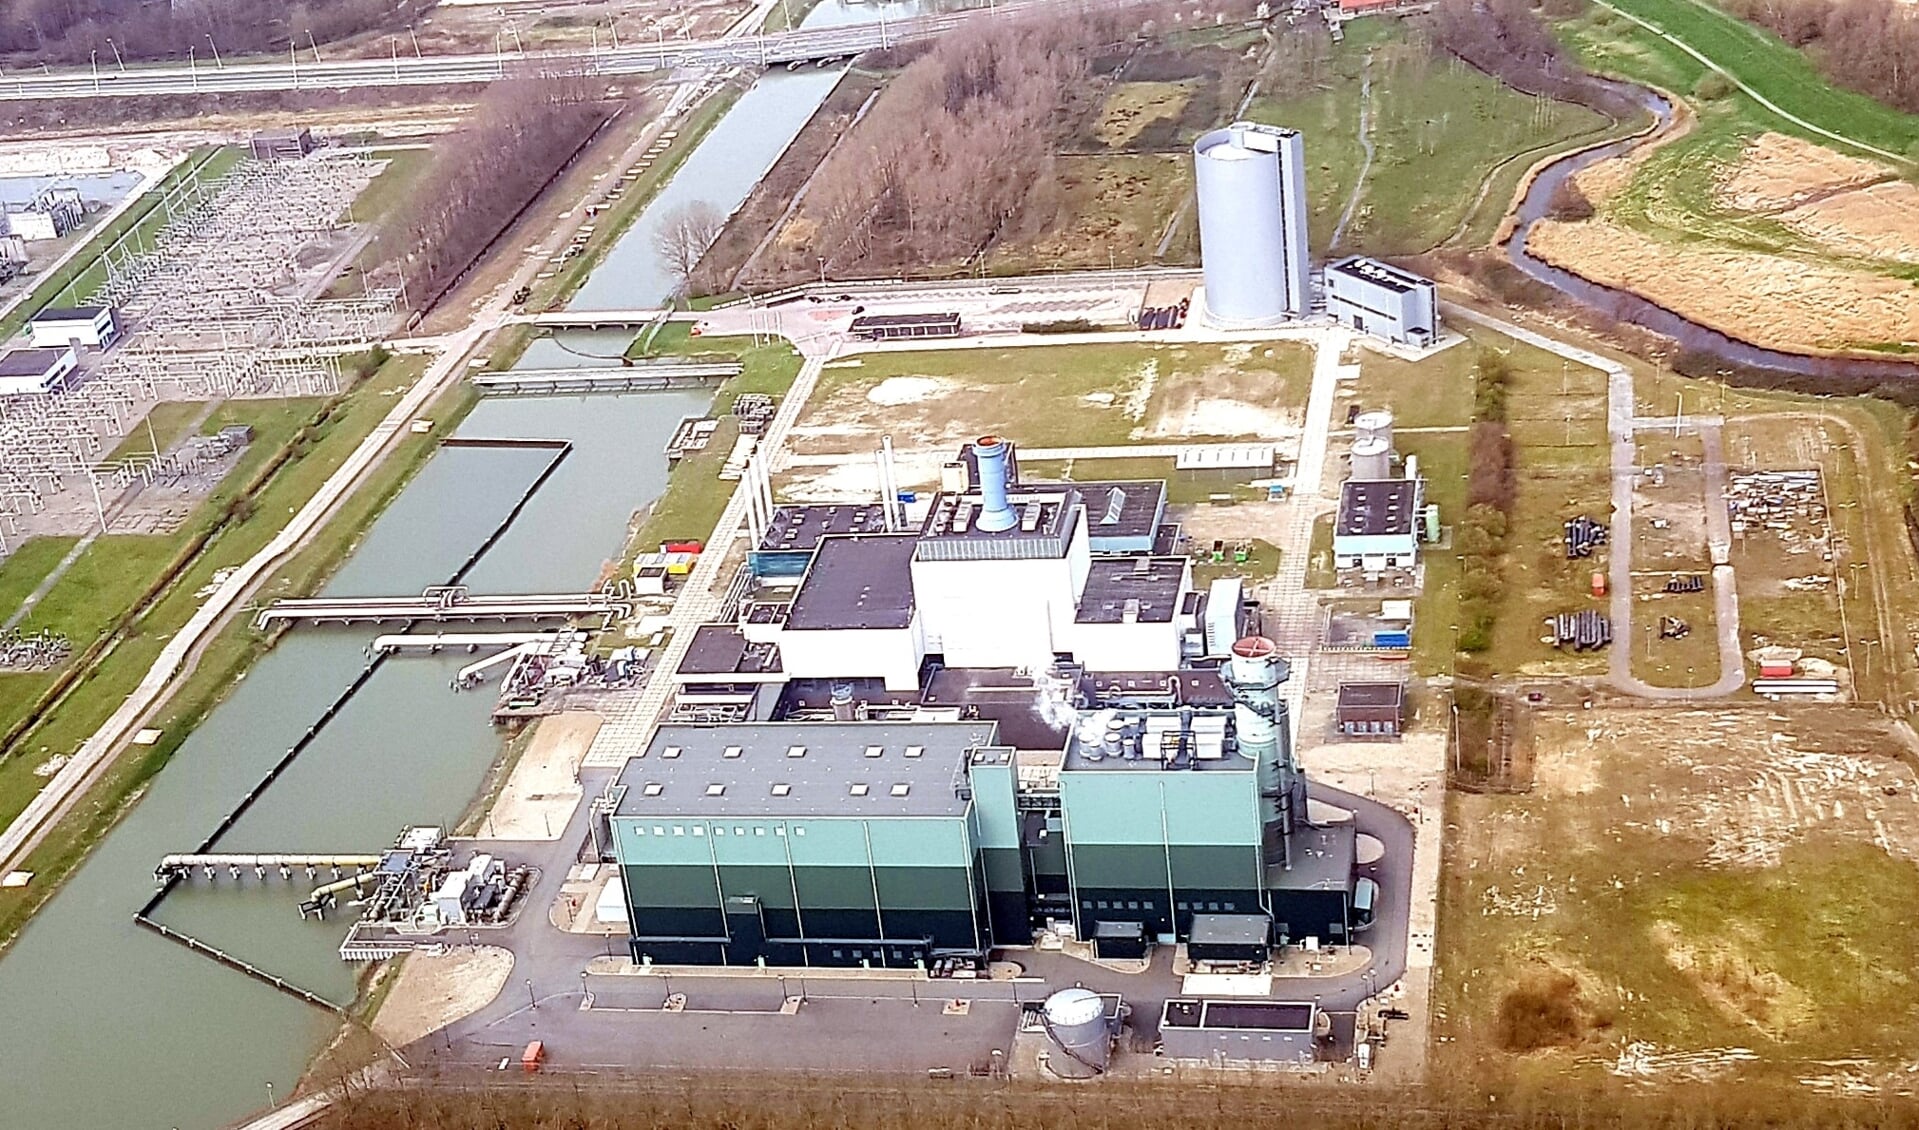 De biomassacentrale in Diemen, vlakbij winkelcentrum Maxis Muiden.